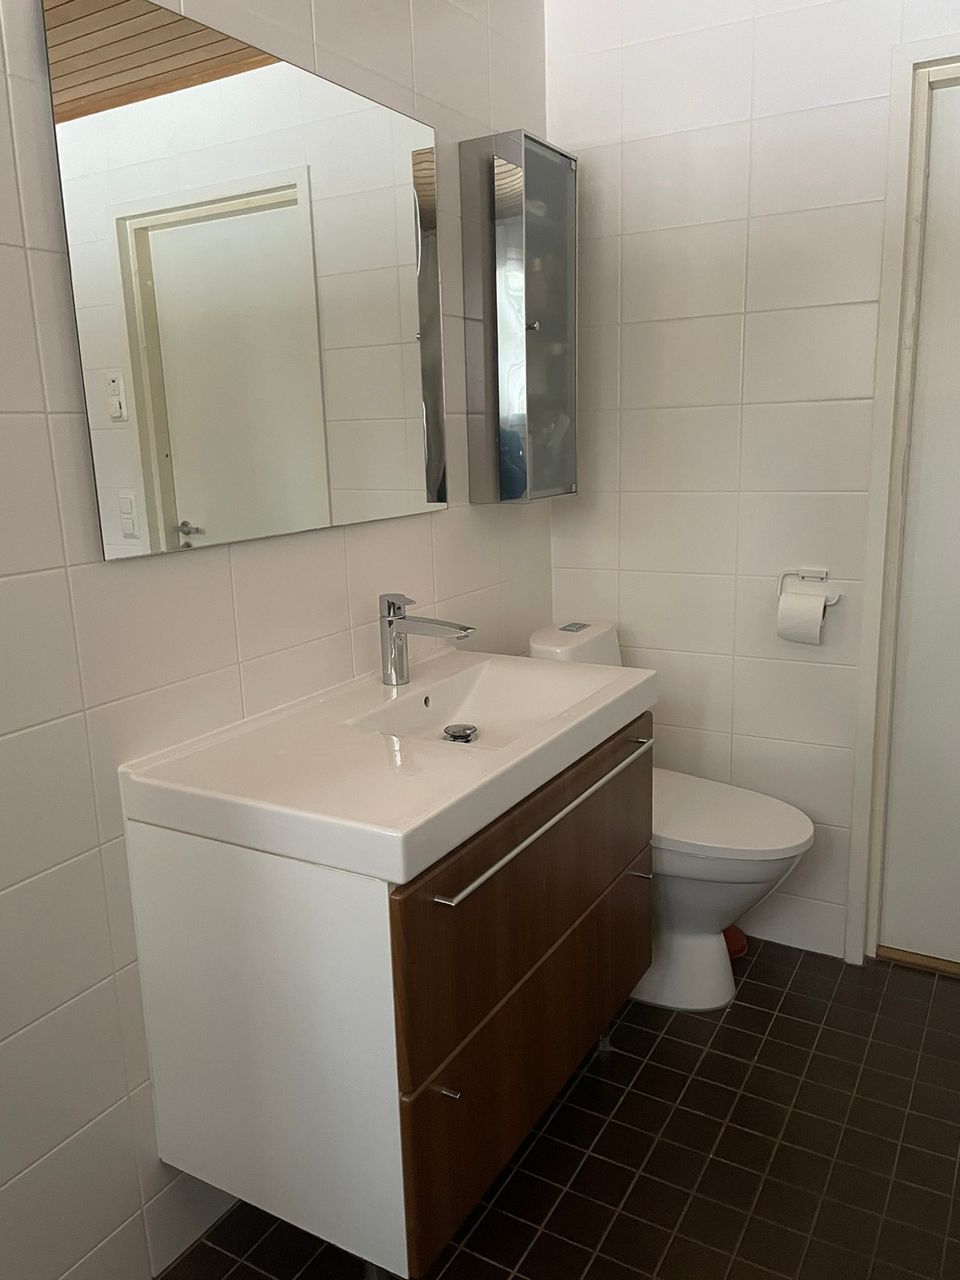 Kylpyhuoneen käsienpesuallas, allaskaluste, peili ja ylänappi